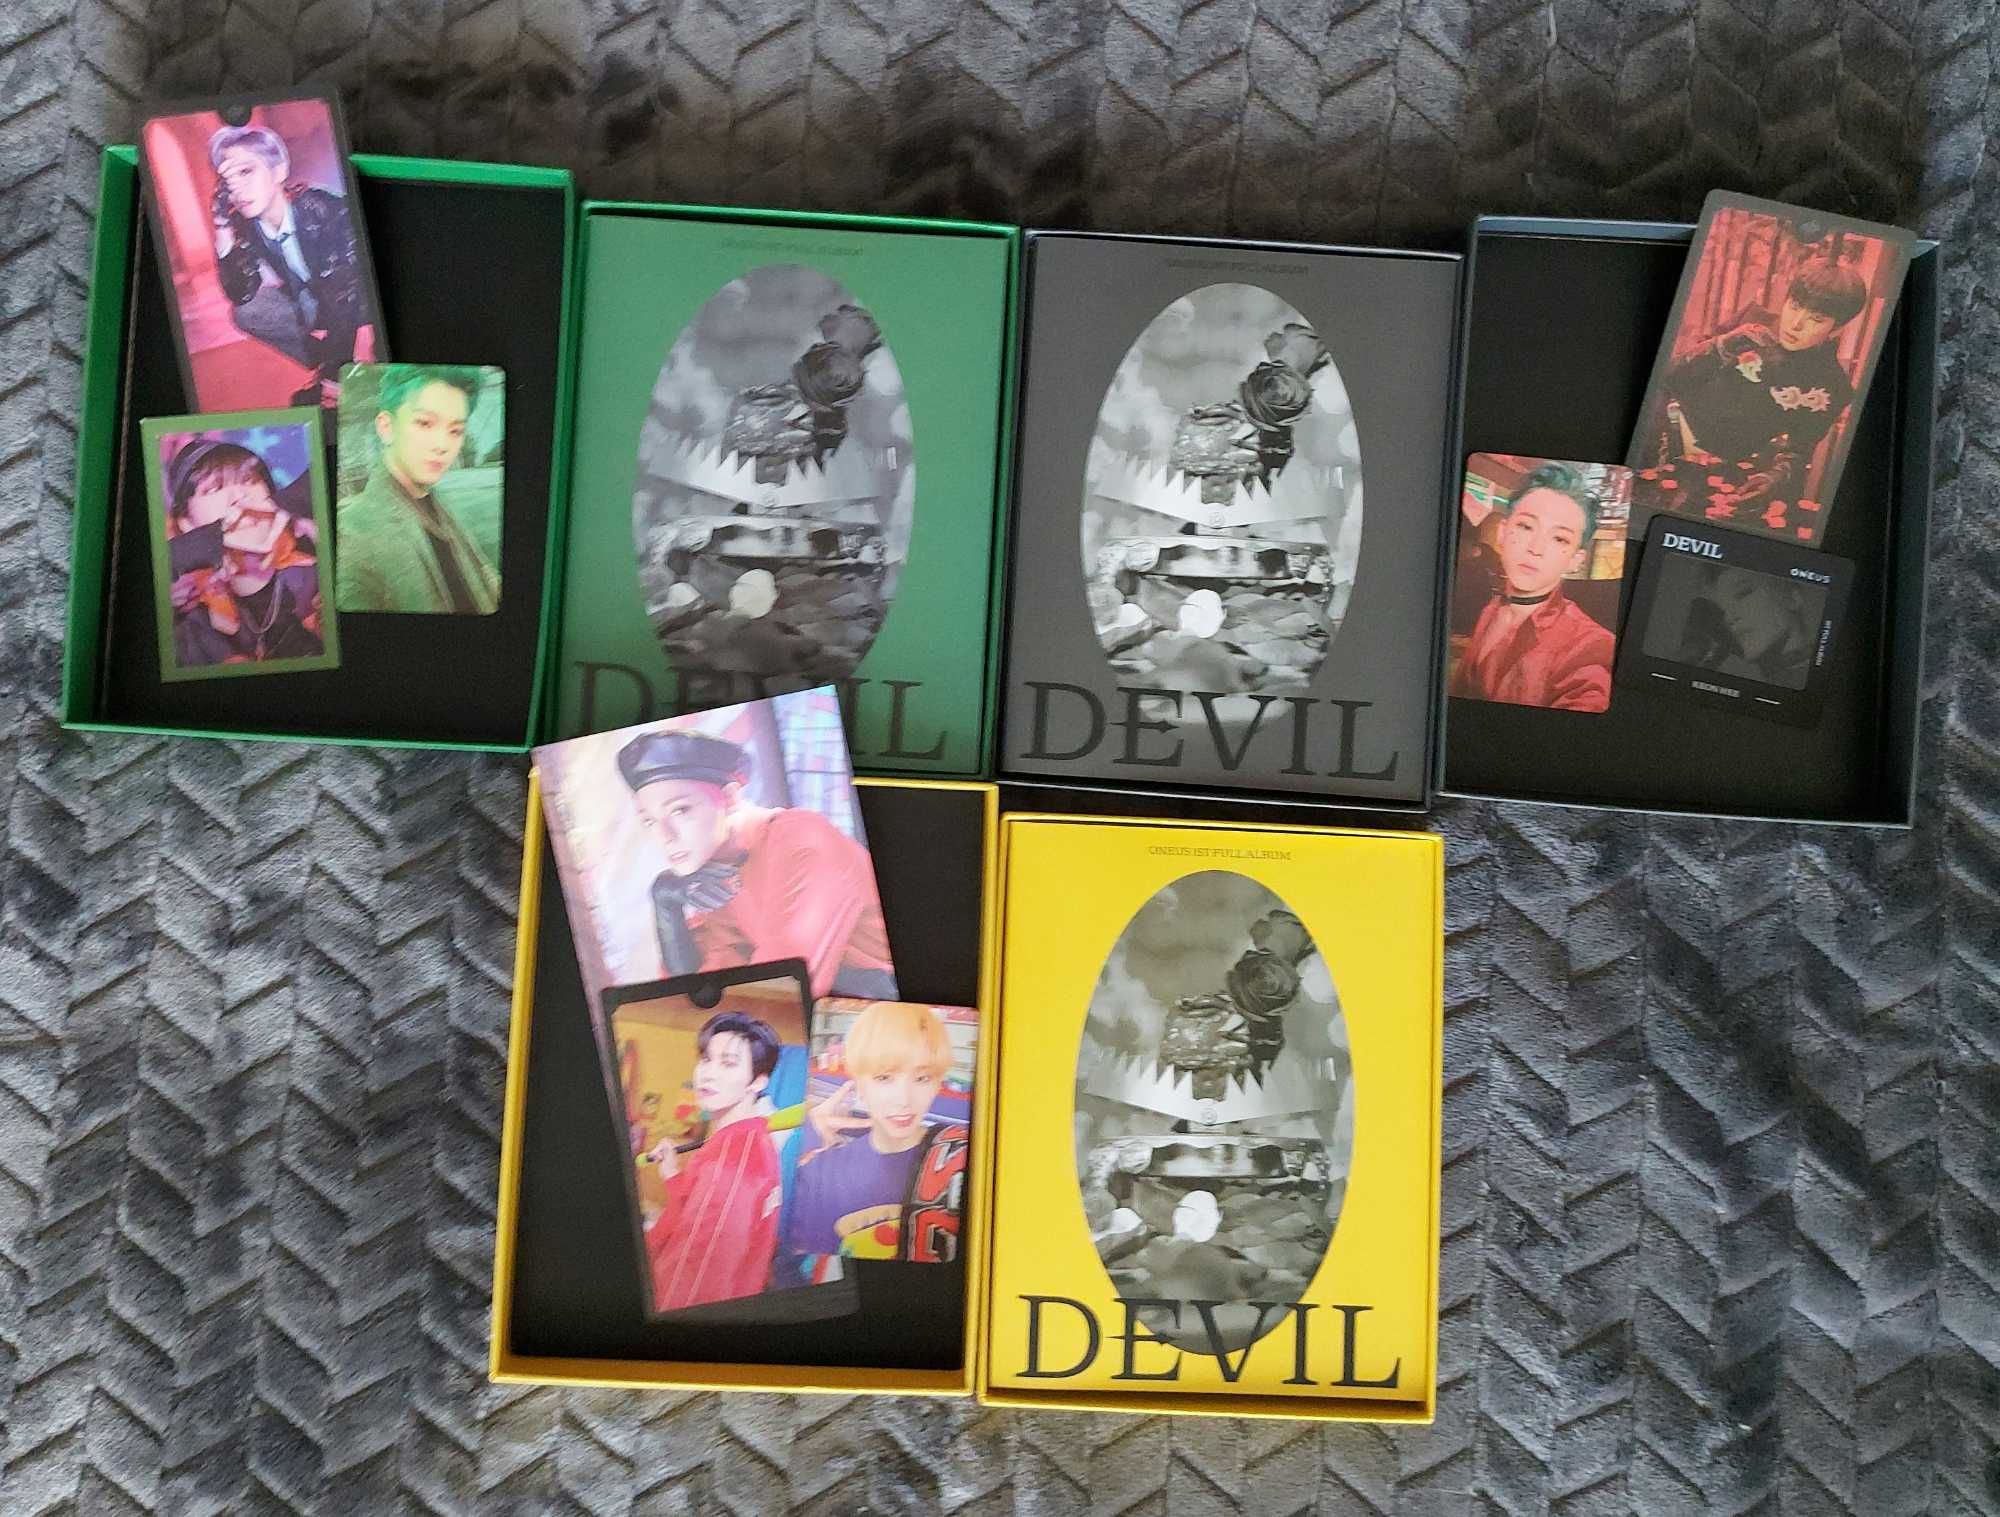 Oneus KPOP Album "Devil"